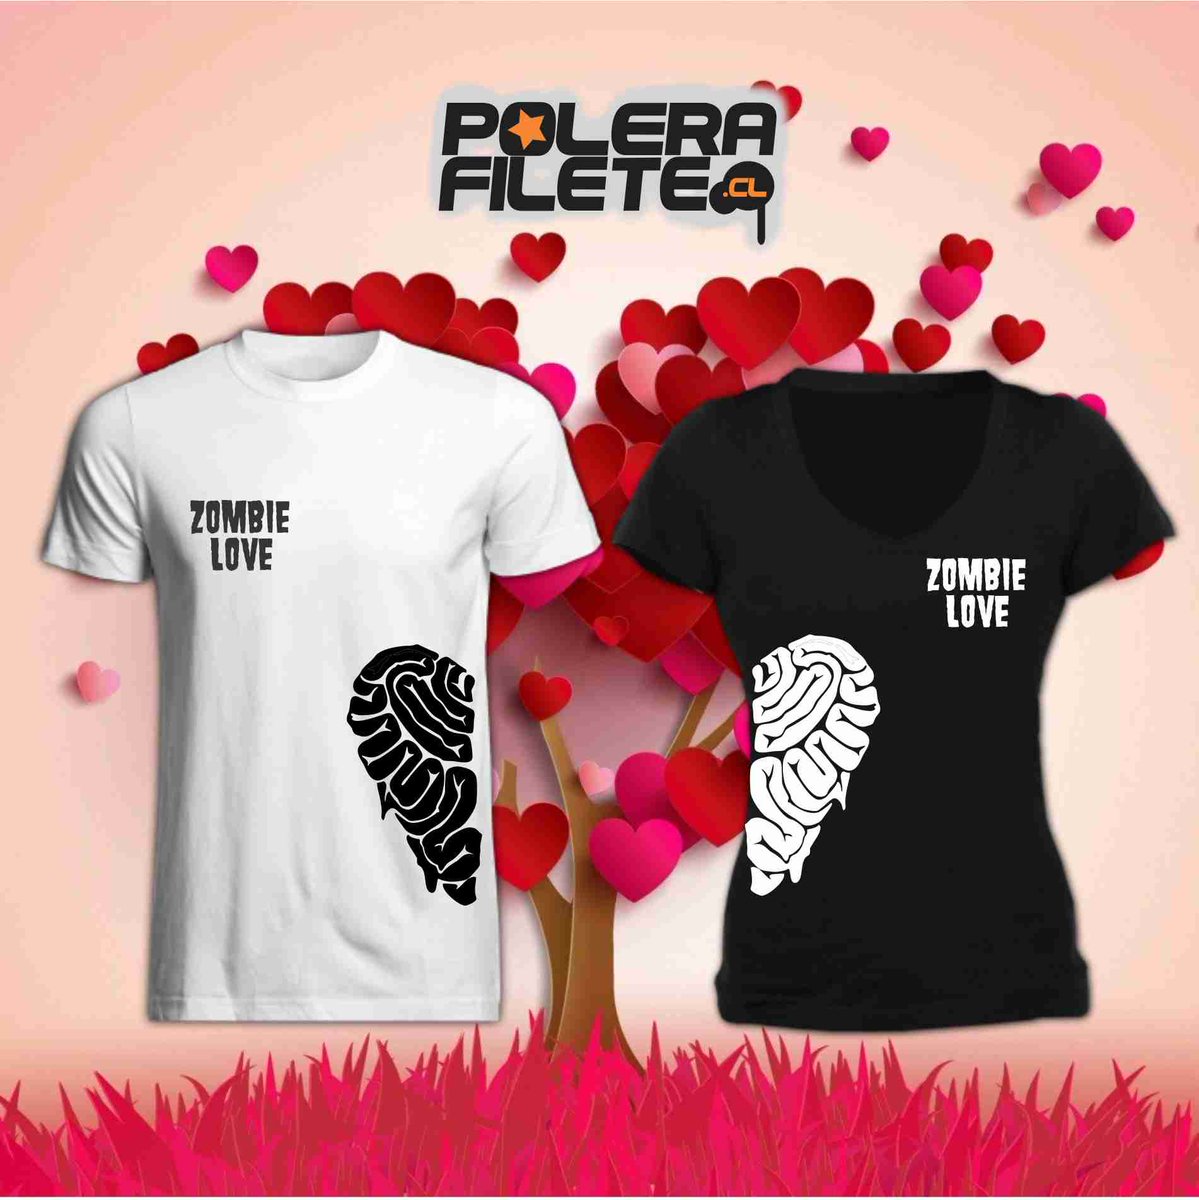 Polera Filete on Twitter: "Recién salidos del horno los diseños para parejas, ideal para el dia de https://t.co/cwPIE5q1mR" / Twitter